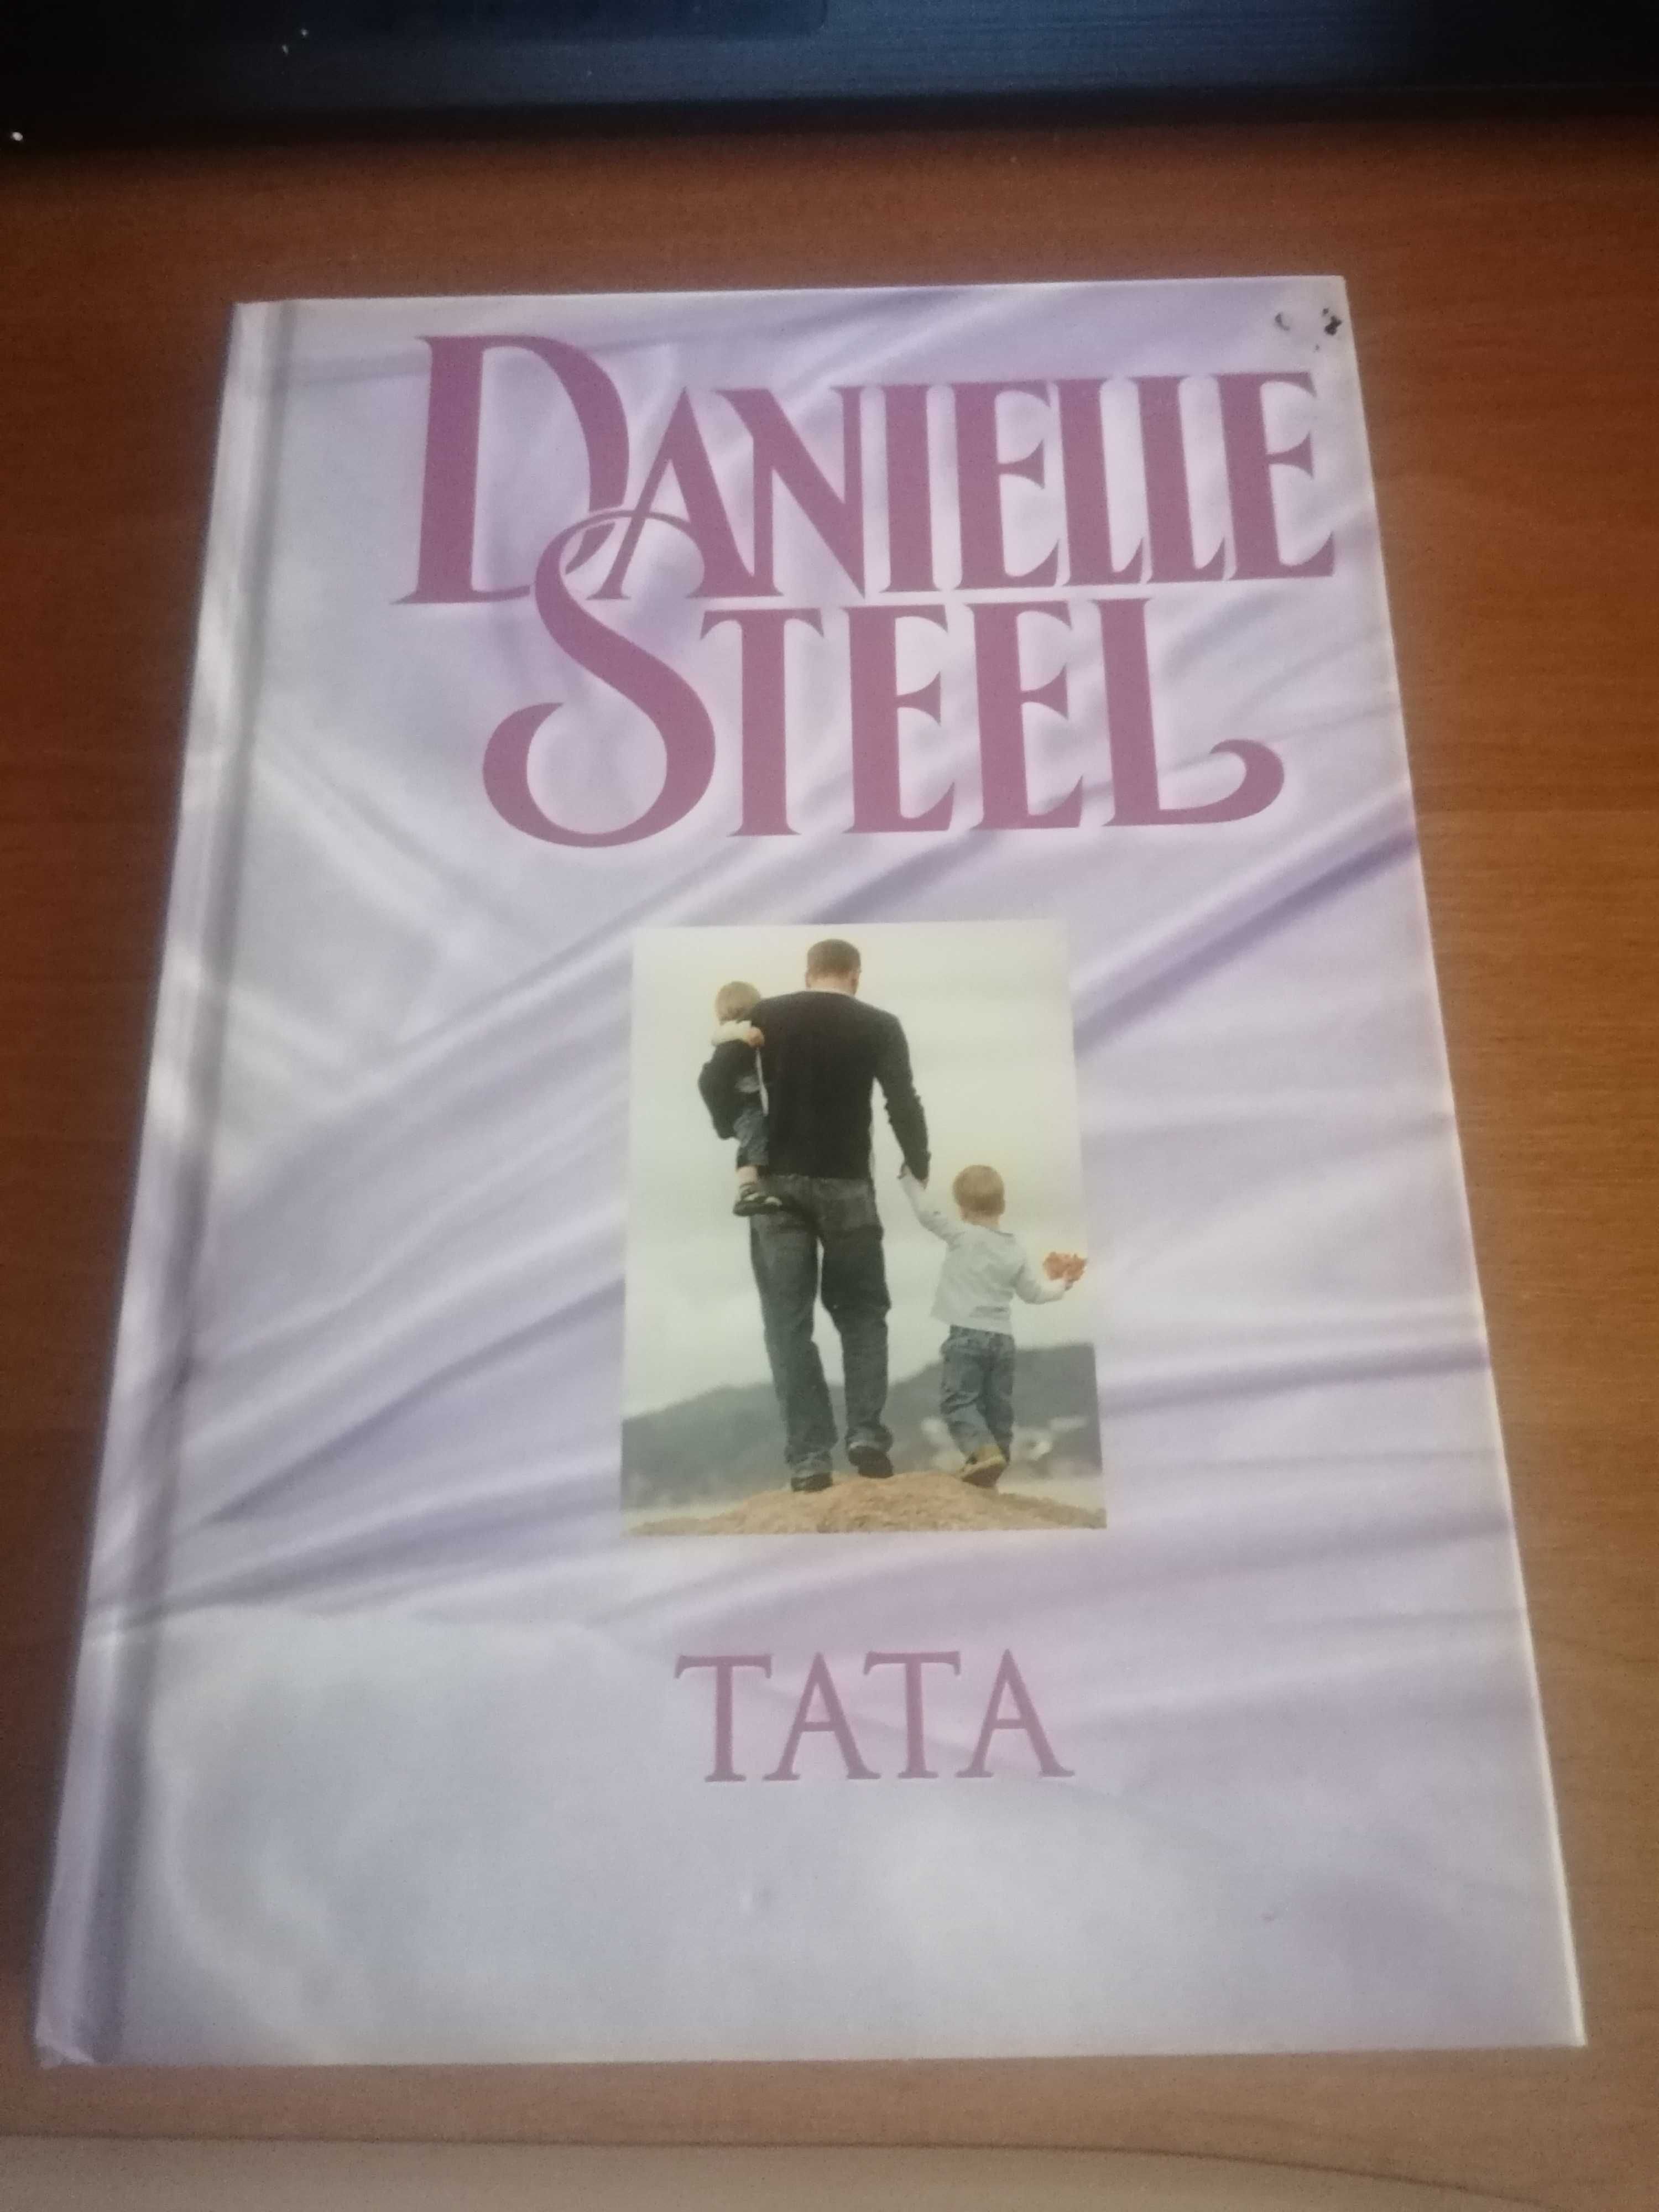 Książka Danielle Steel "Tata"